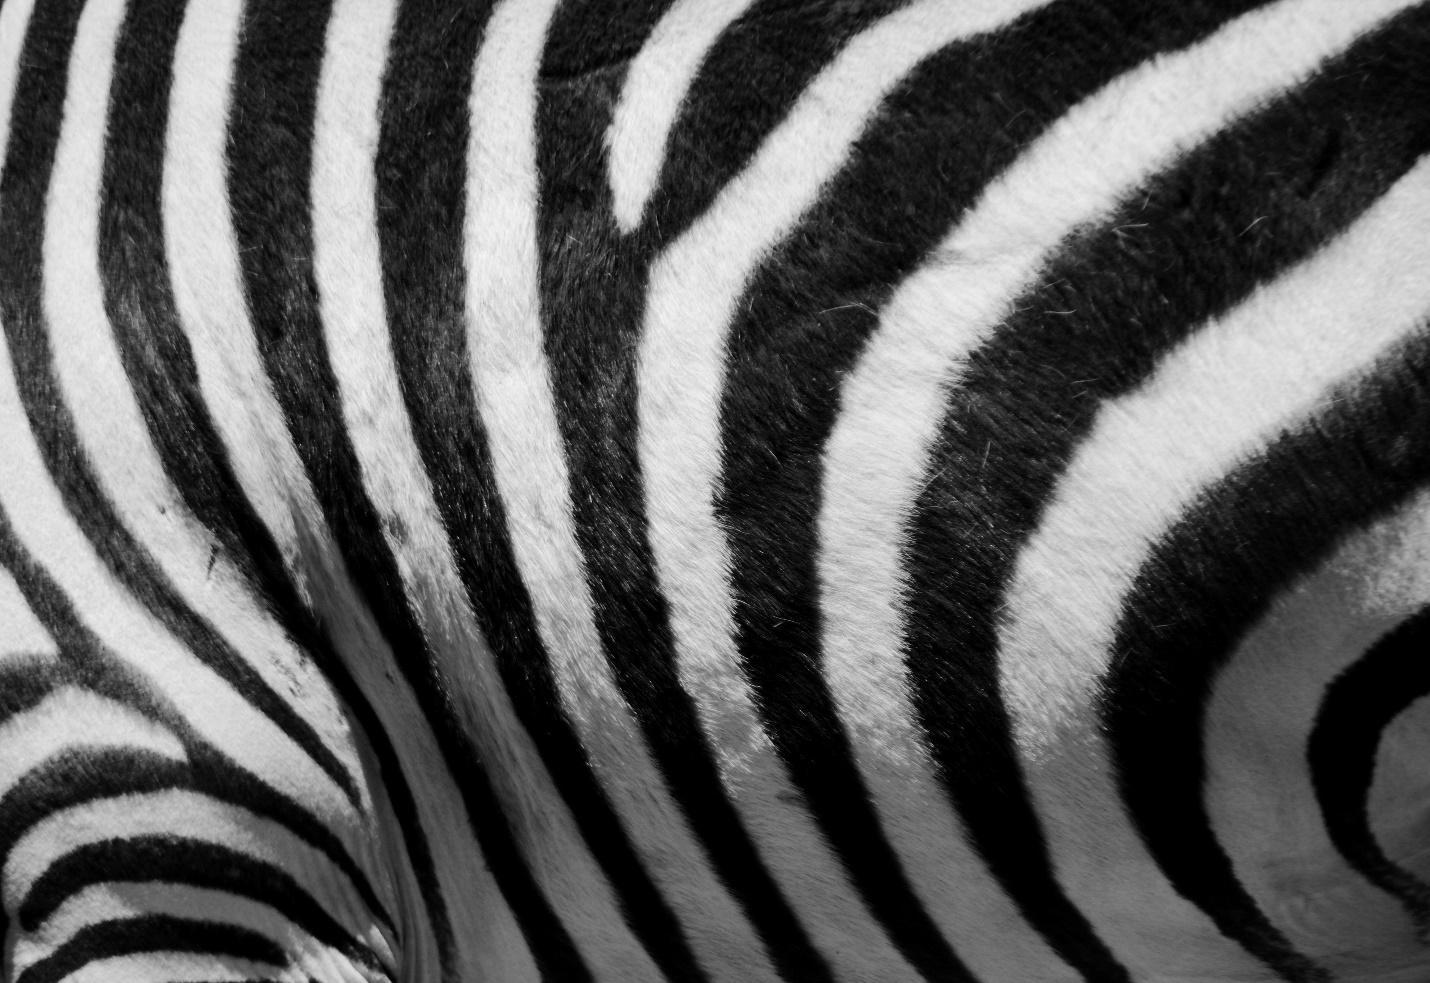 Zebra print is quite common in interior design.